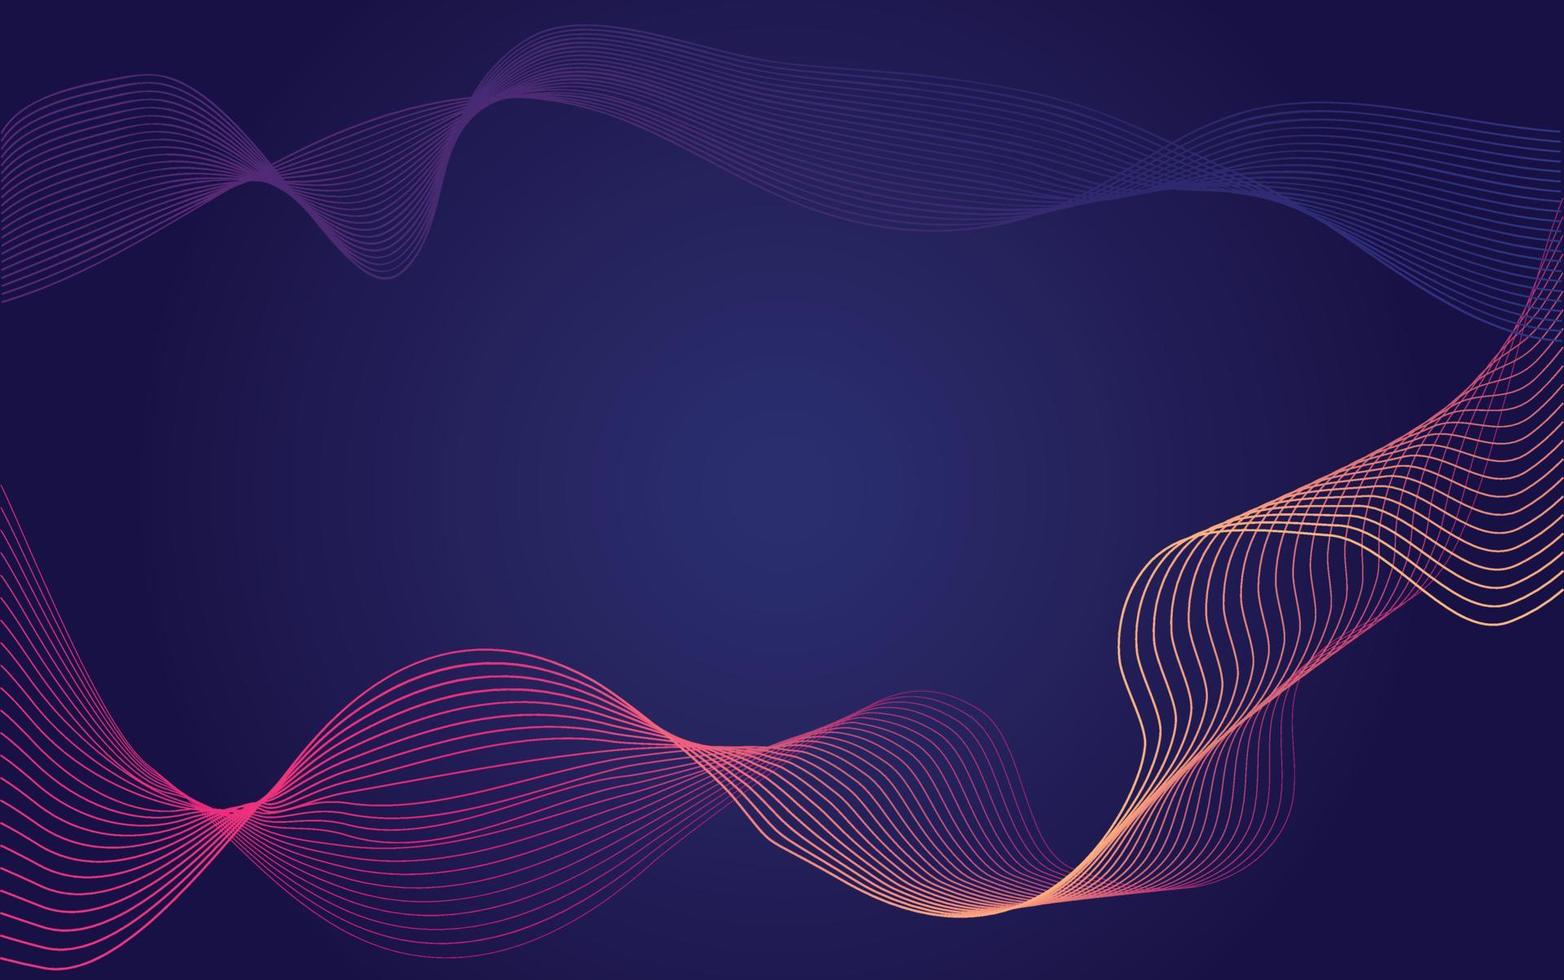 abstraktes wellenelement für design. digitaler Frequenzspur-Equalizer. stilisierte Linie Kunsthintergrund. Bunte, glänzende Welle mit Linien, die mit dem Mischwerkzeug erstellt wurden. gebogene Wellenlinie, glatter Streifen.Vektor.Weiß vektor